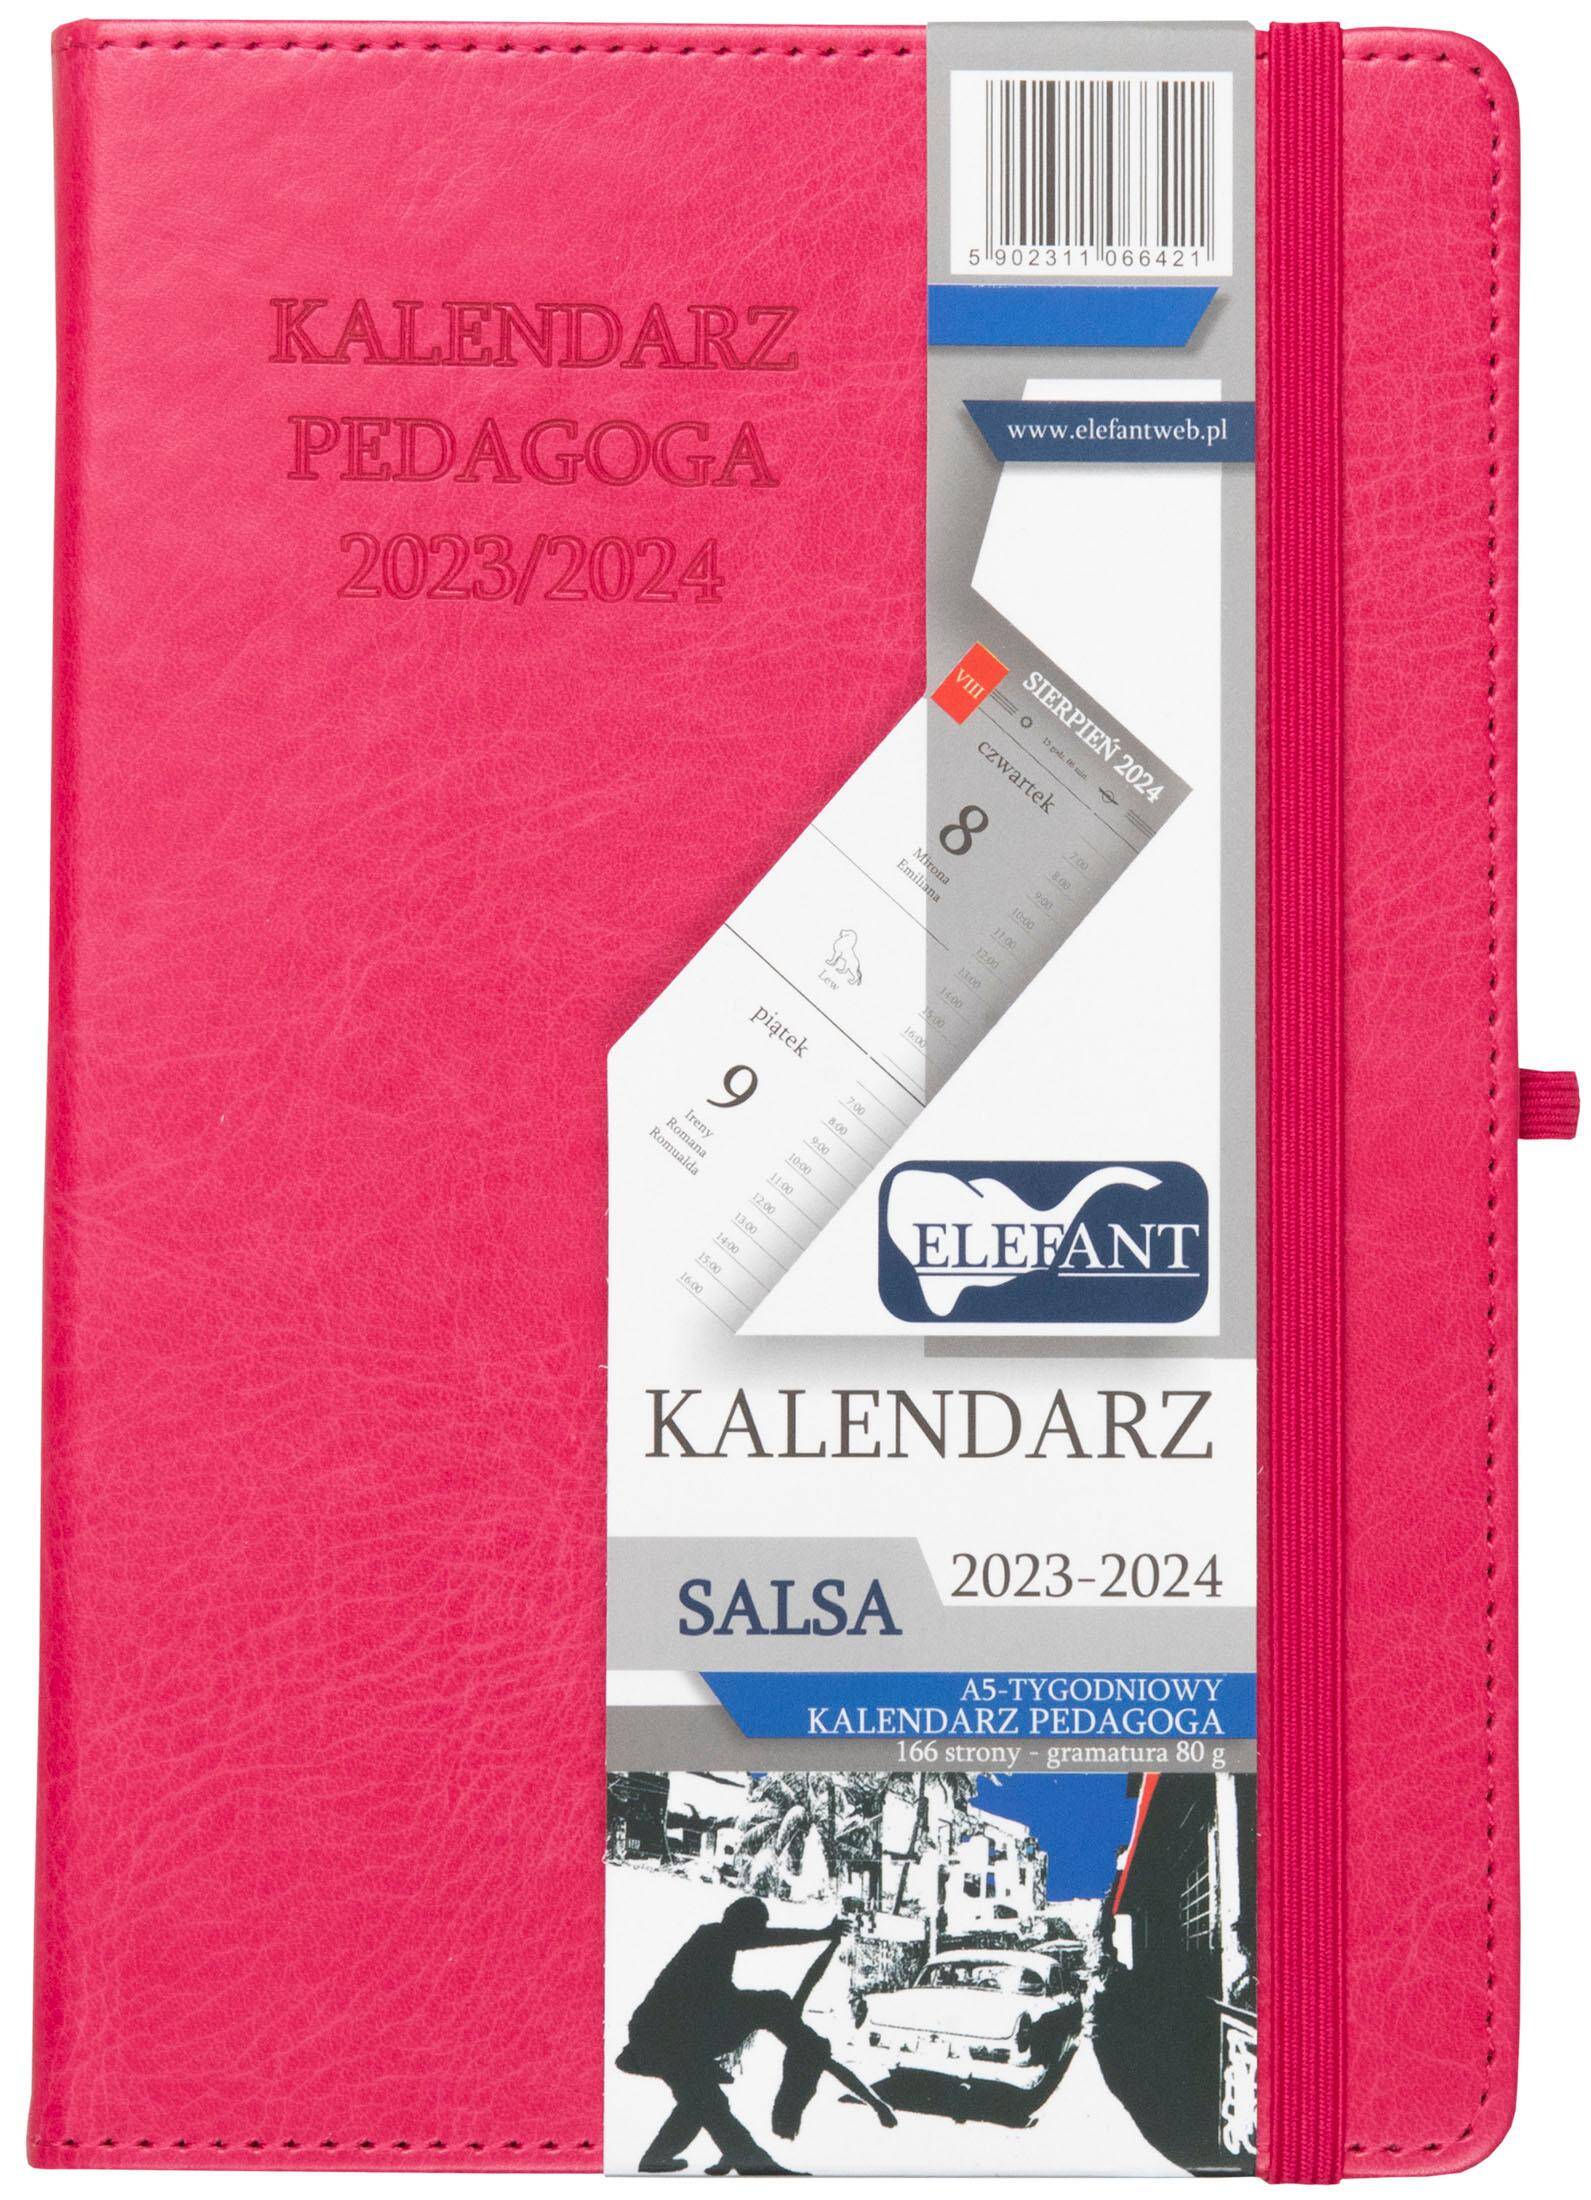 Kalendarz Pedagoga 2023/2024 salsa A5 tygodniowy karmazynowy